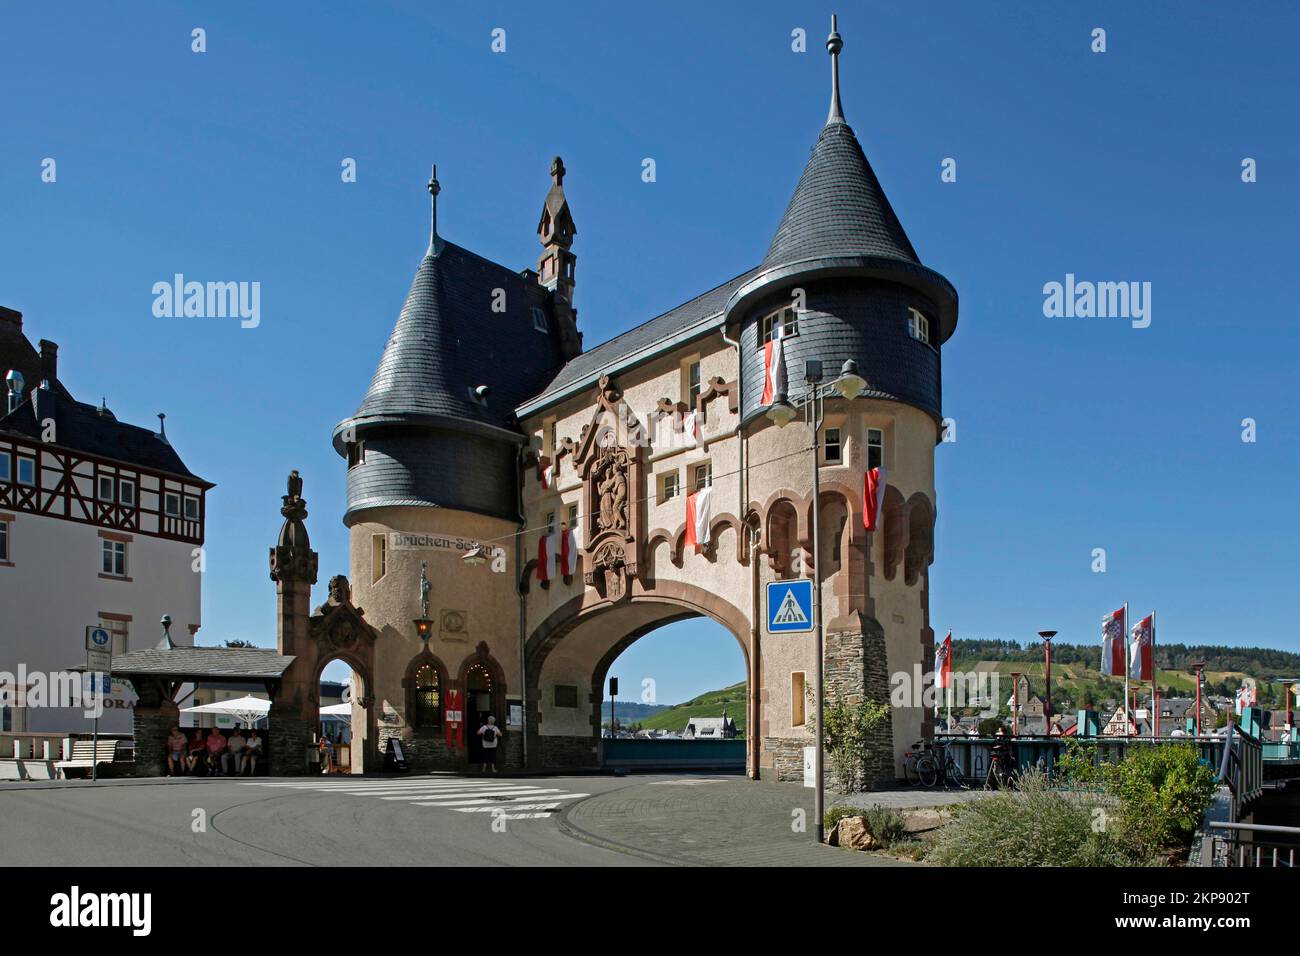 Brückentor, Traben-Trarbach, Moselle, Rheinland-Pfalz, Deutschland, Europa Stockfoto